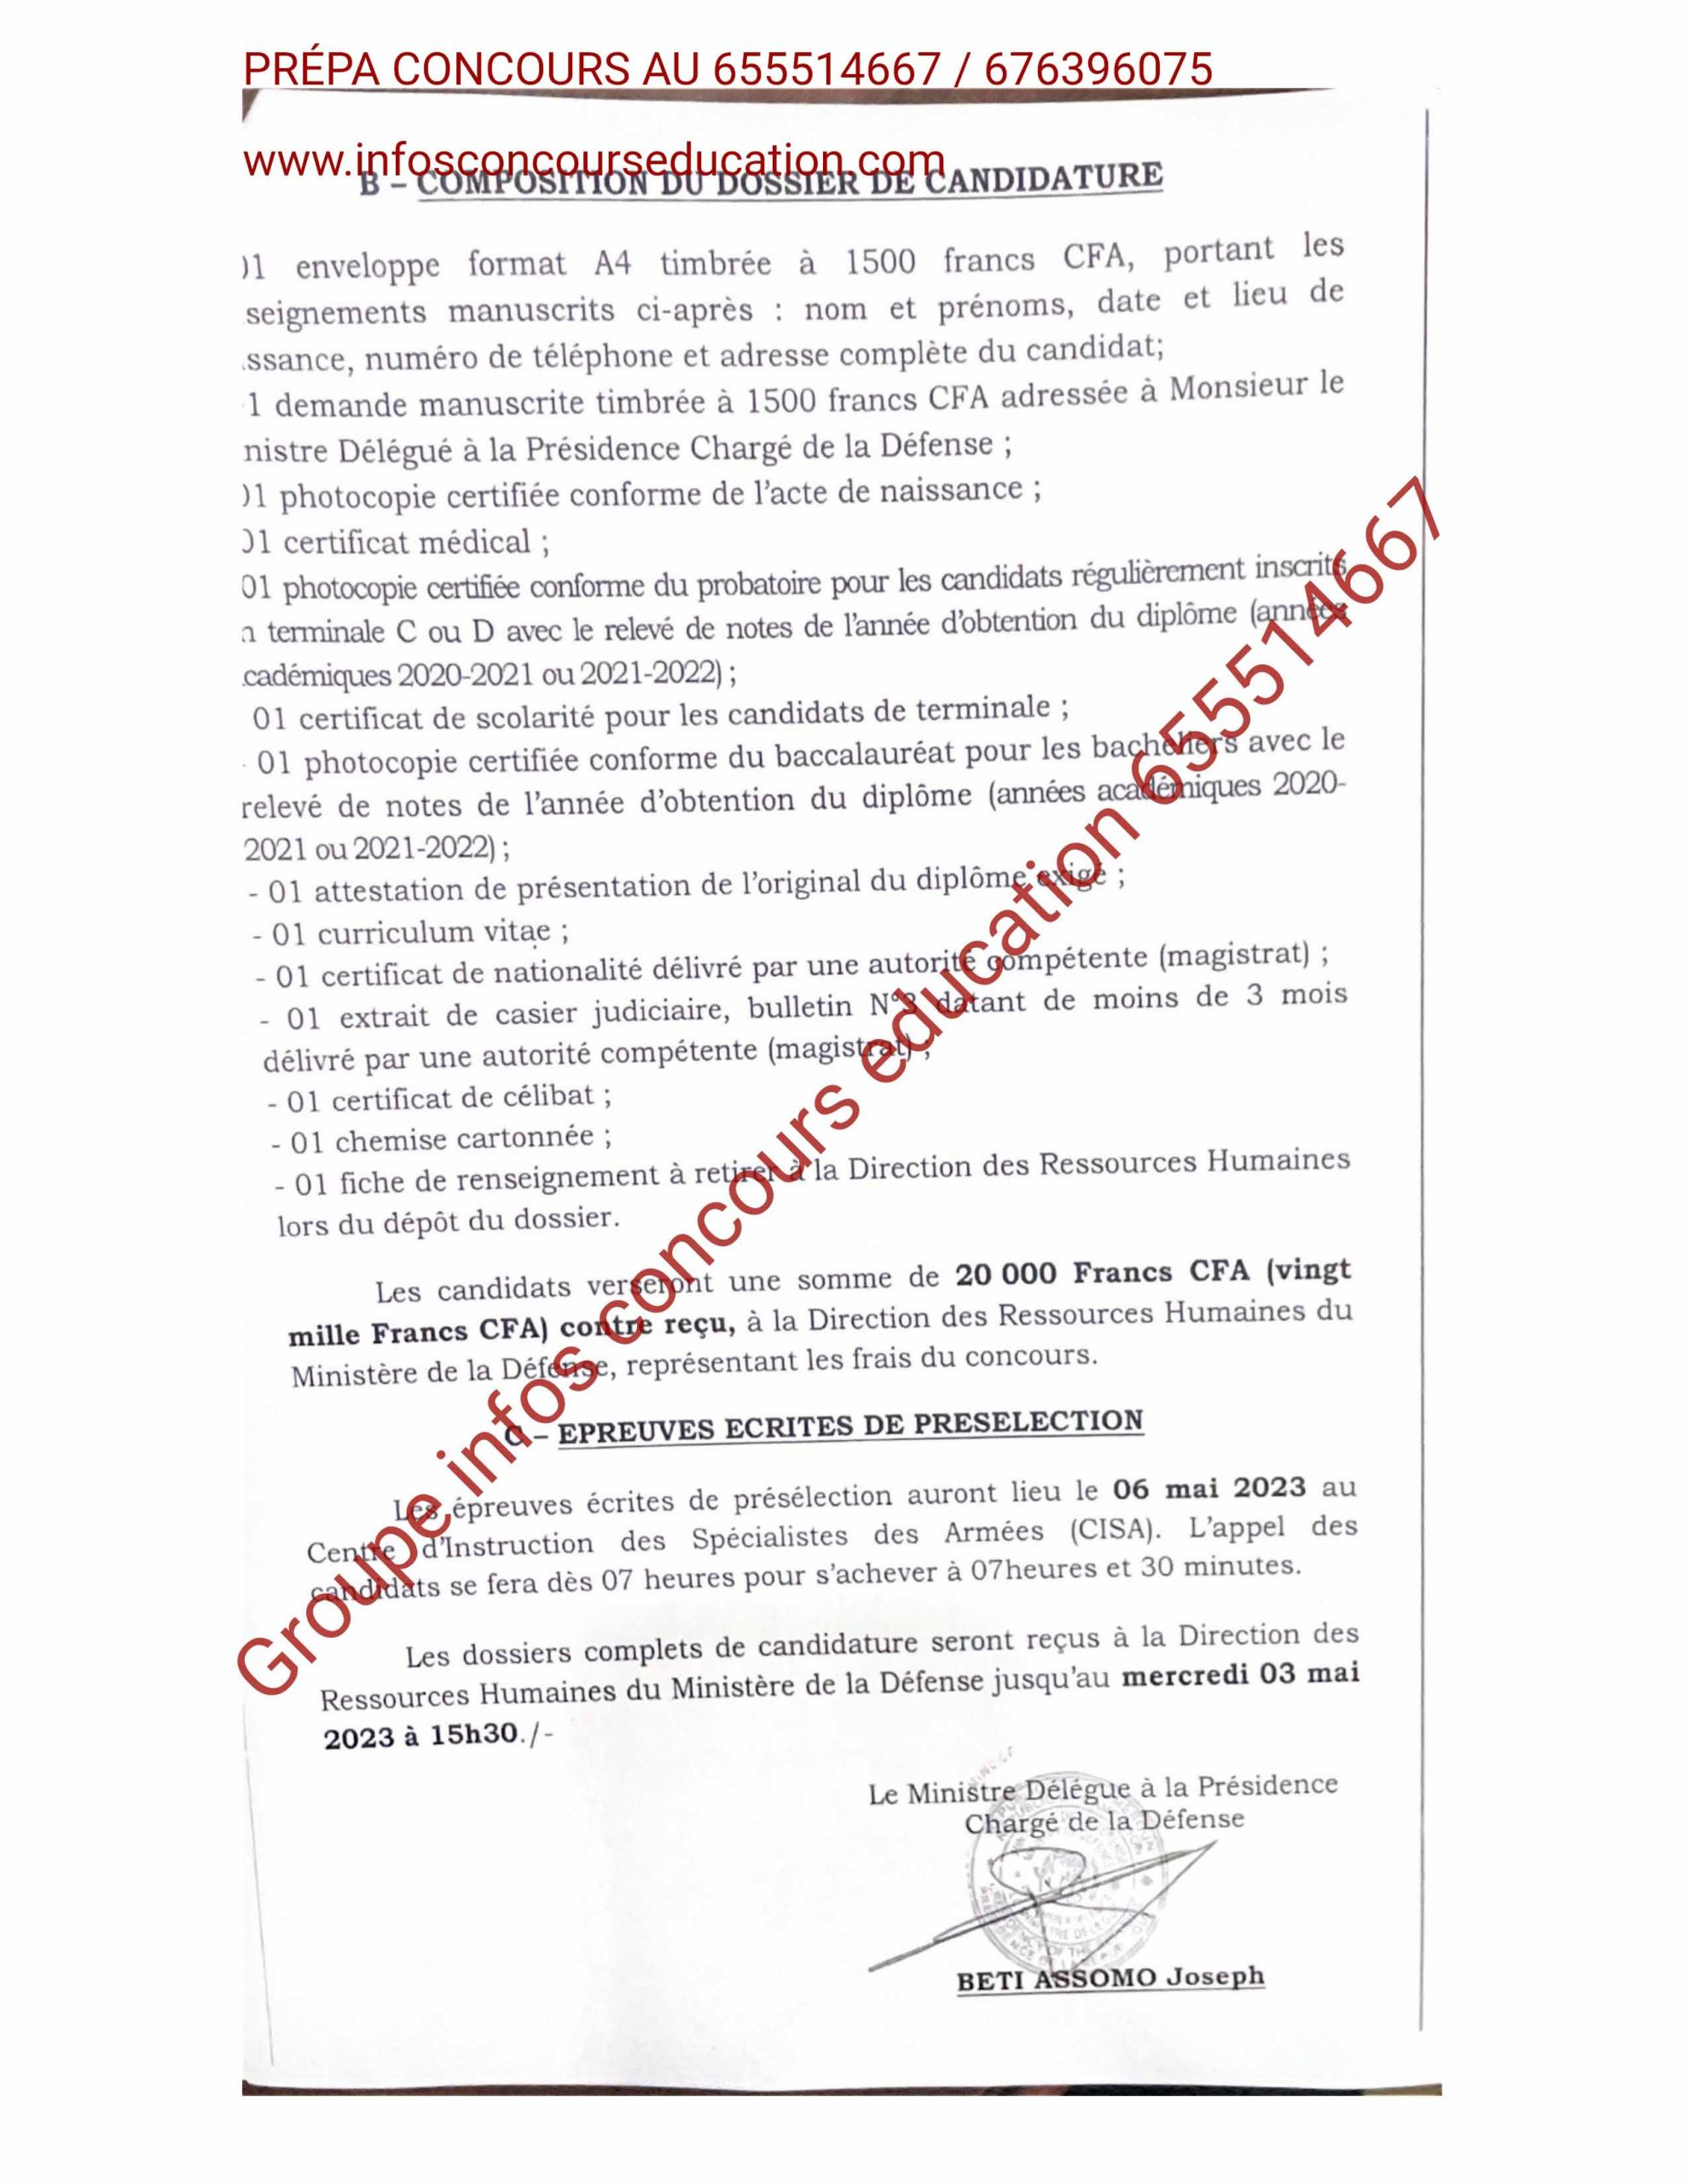 cours de préselection pour l'admission à Ecole du Service de Santé des Armées de Lomé (ESSAL au Togo 2023